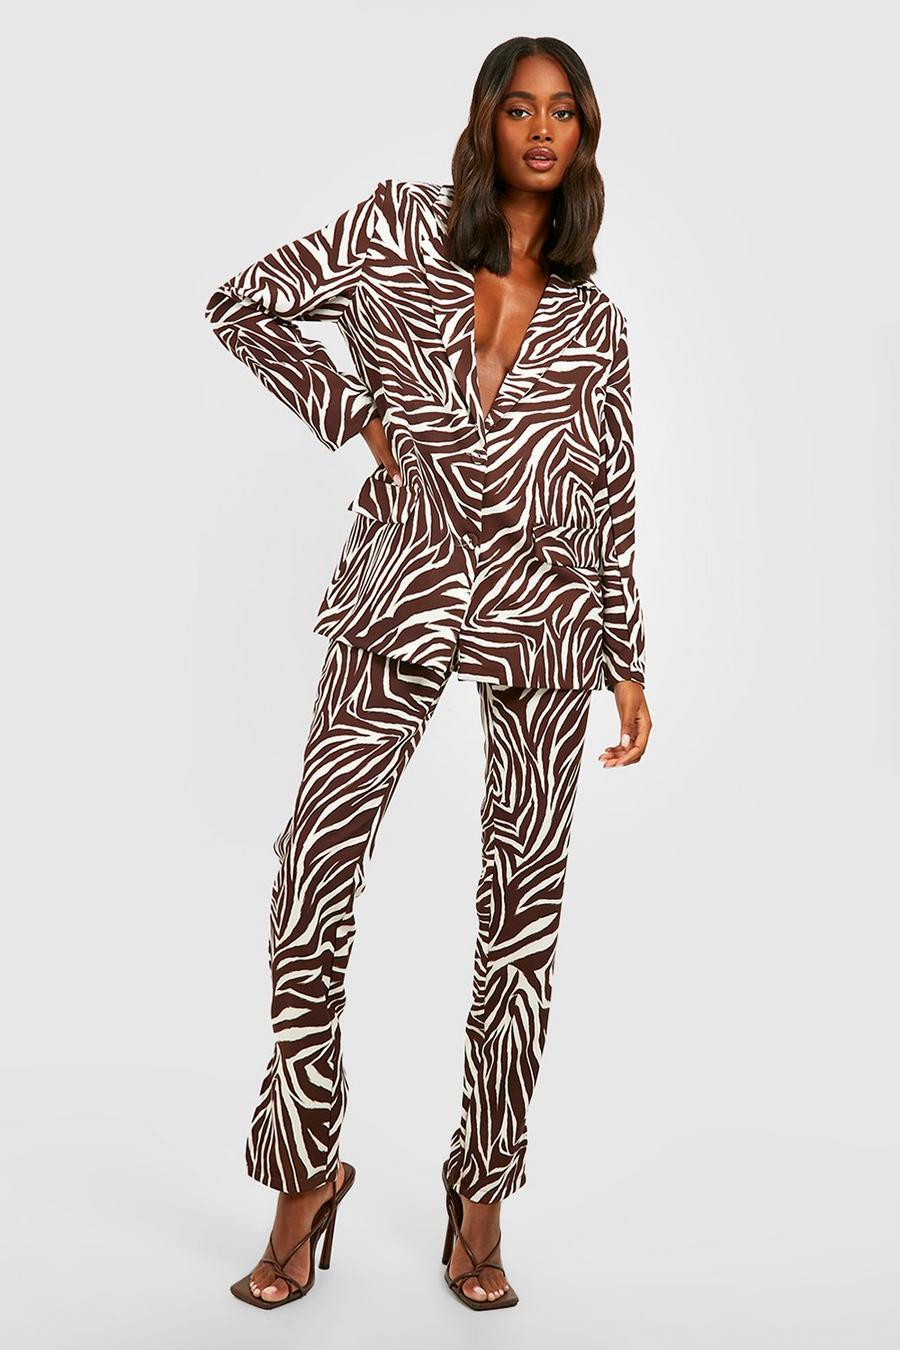 Pantaloni Slim Fit zebrati tono su tono con spacco frontale, Chocolate marrone